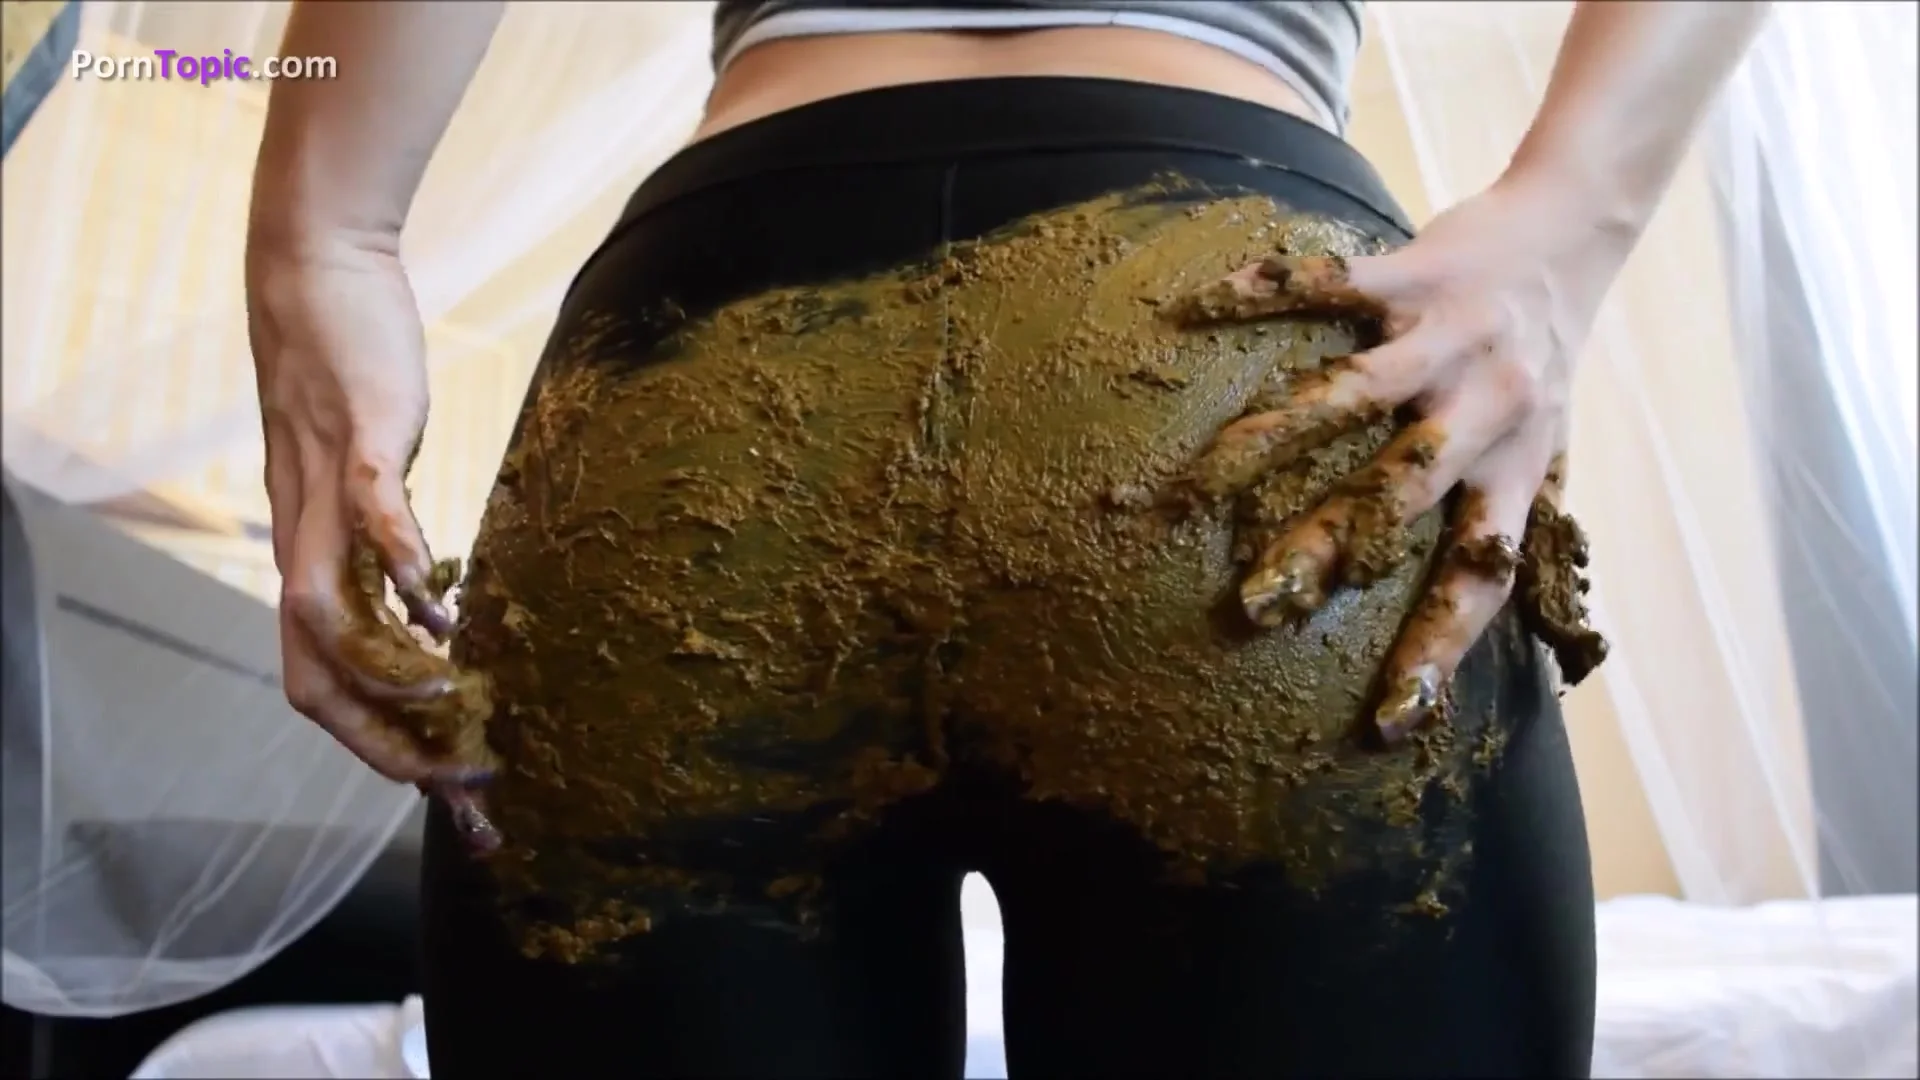 Poop in black leggings - video 2 - ThisVid.com